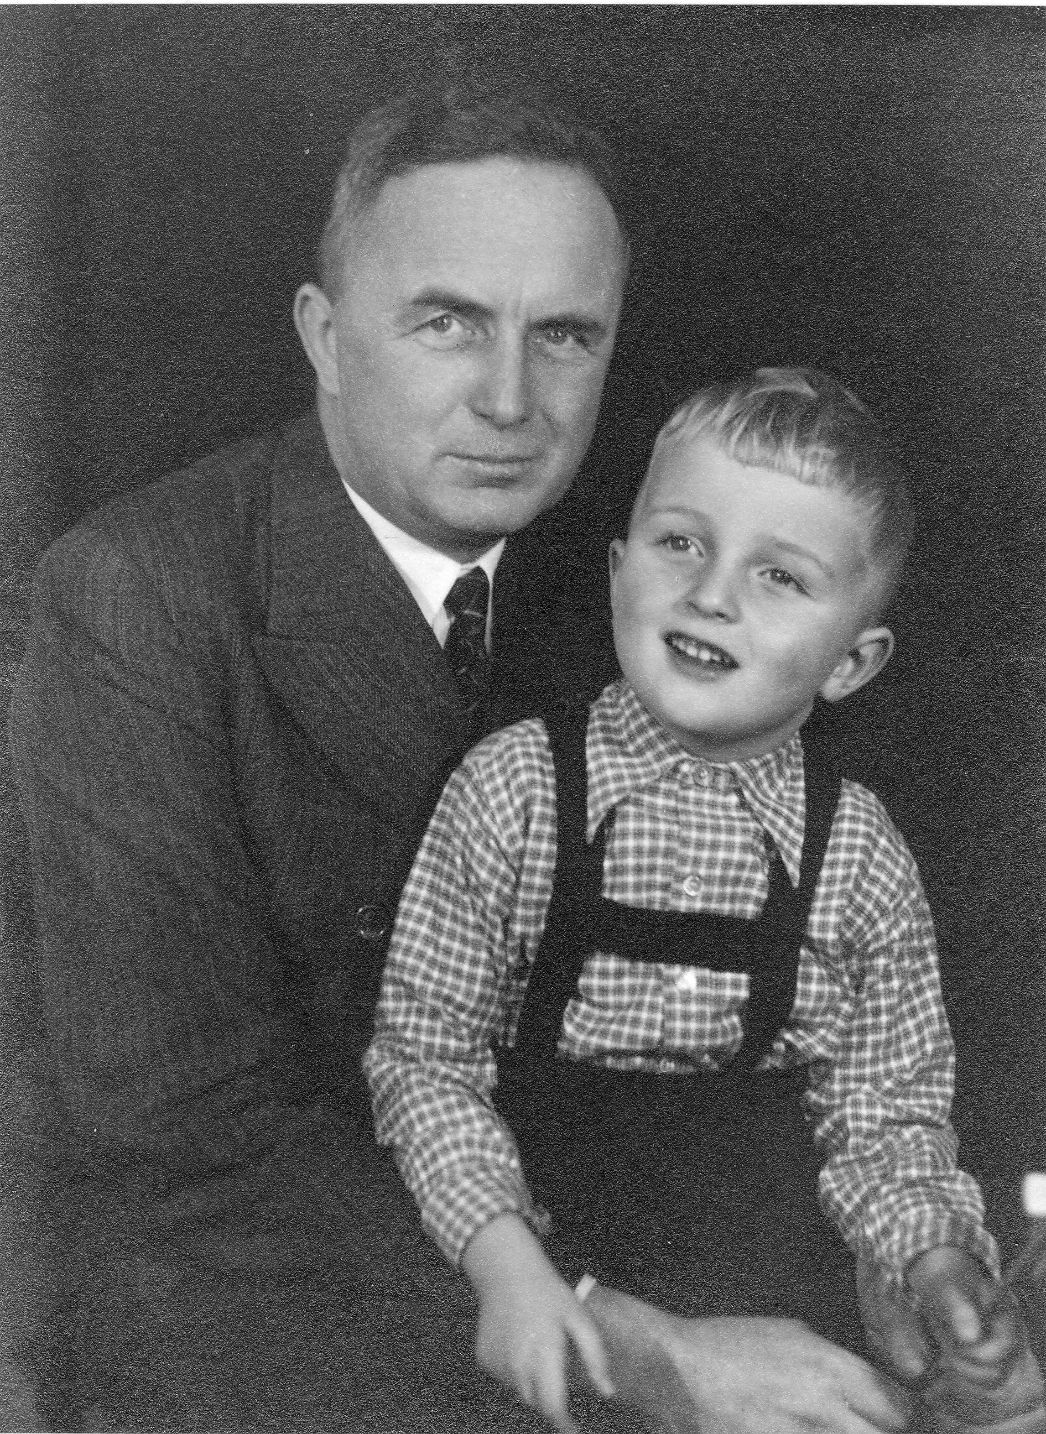 Portraiaufnahme von Hermann da Fonseca-Wollheim mit Sohn